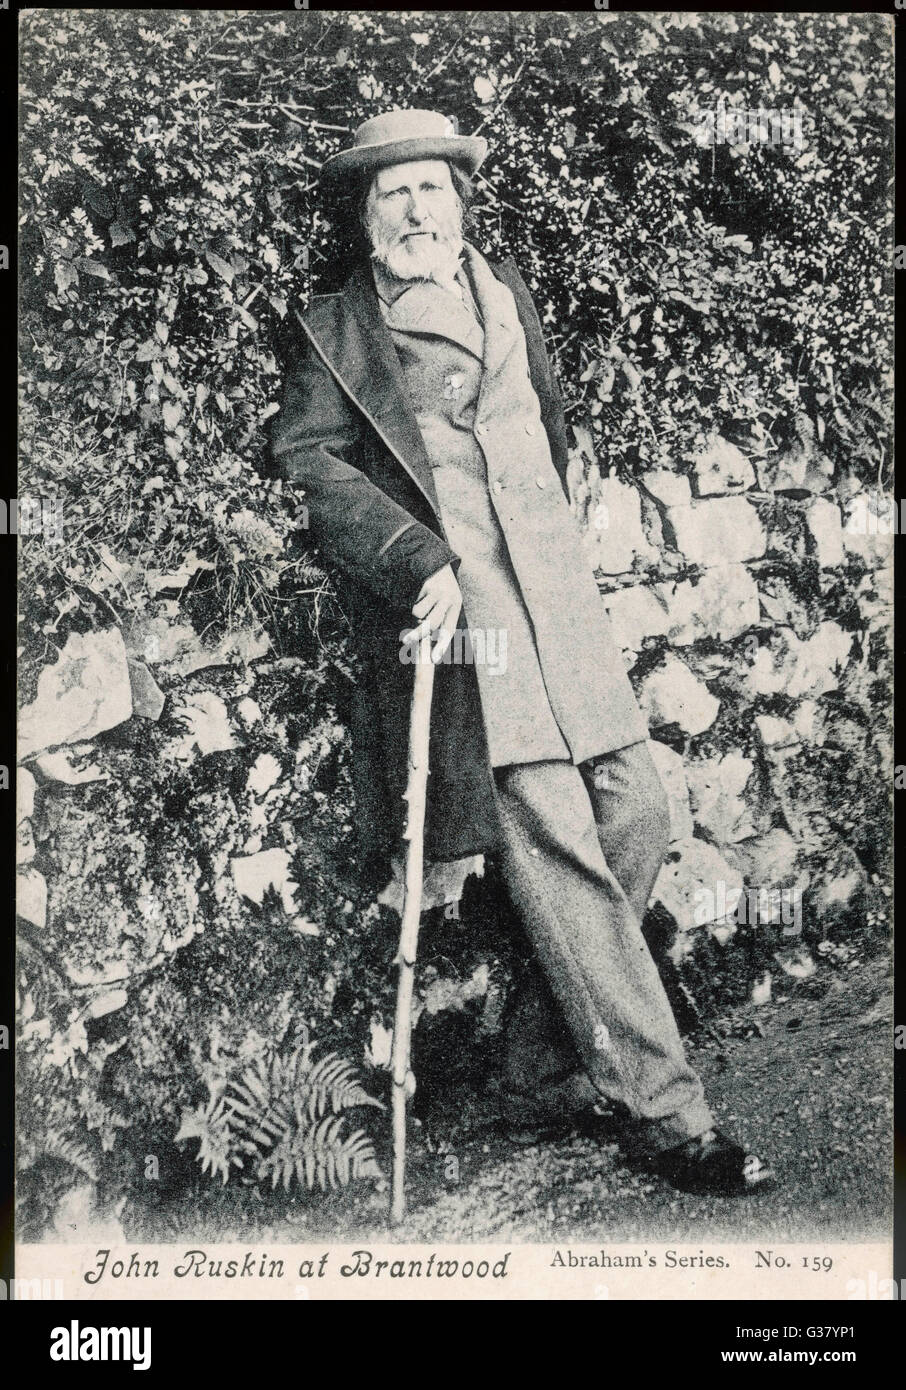 JOHN RUSKIN arte inglese critico e scrittore a Brantwood data: 1819 - 1900 Foto Stock